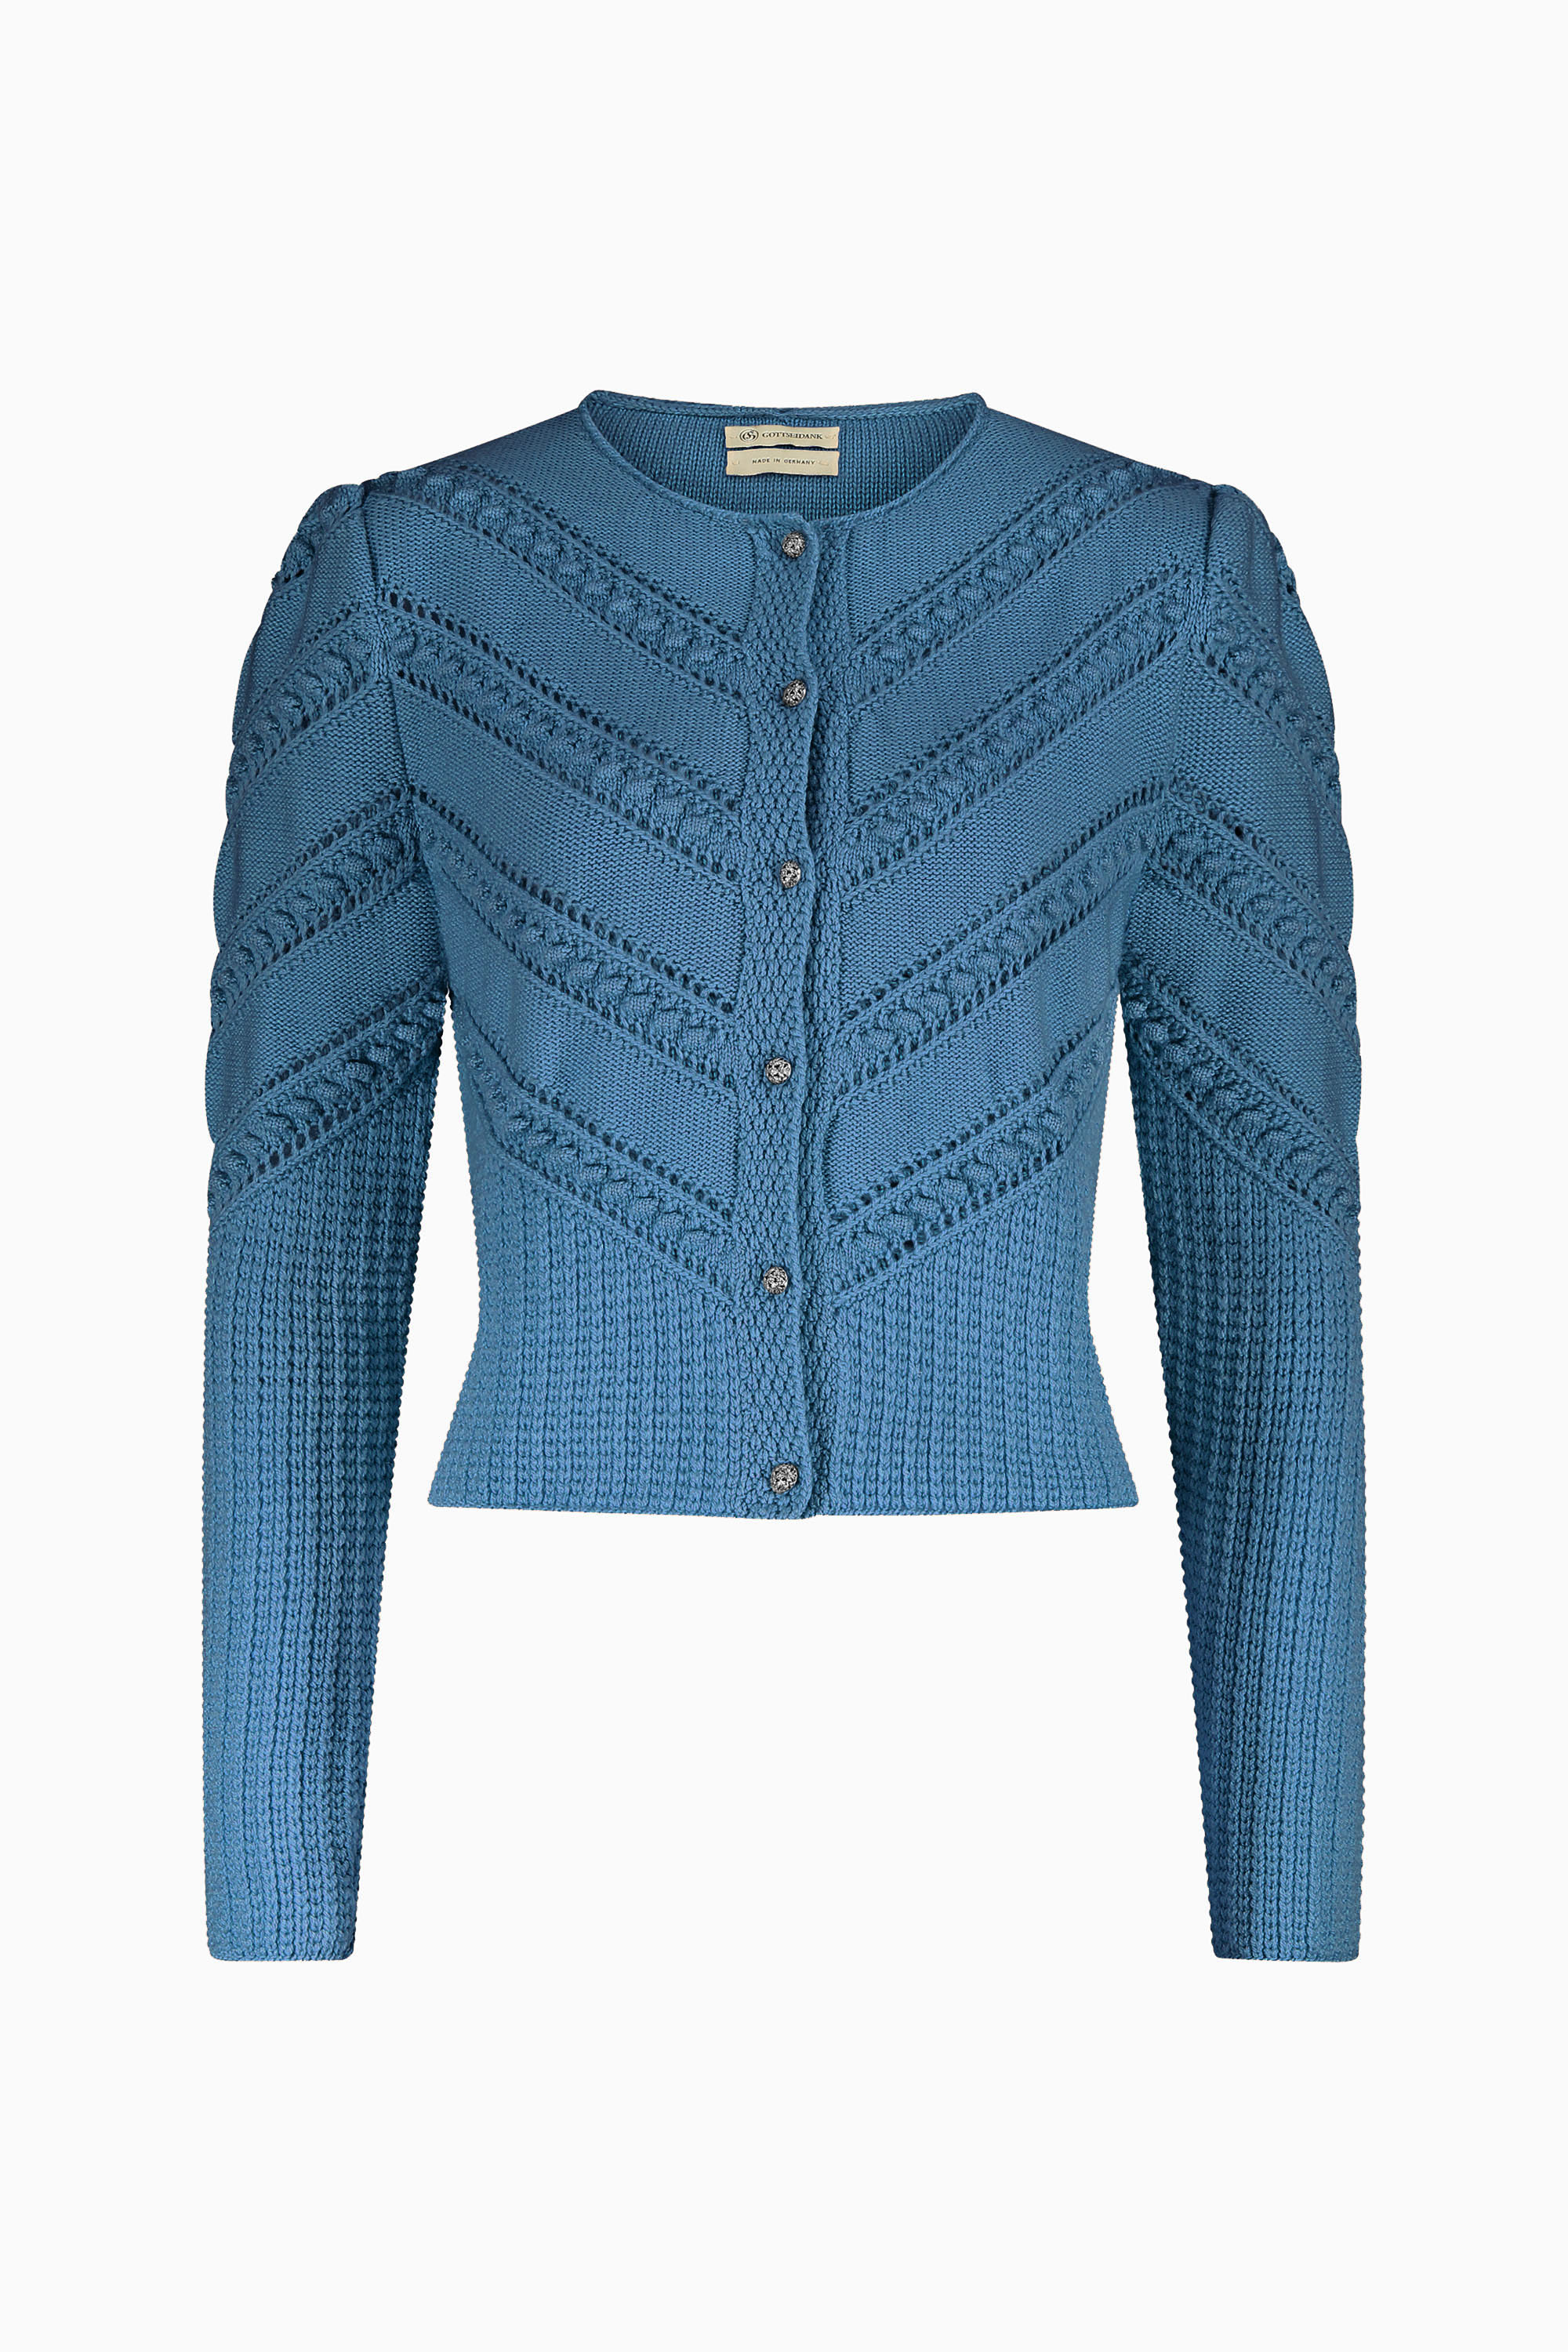 Kurze, Taillierte Damenstrickjacke mit leicht eingereihten Ärmeln und verschiedenen Strickmustern in blau.